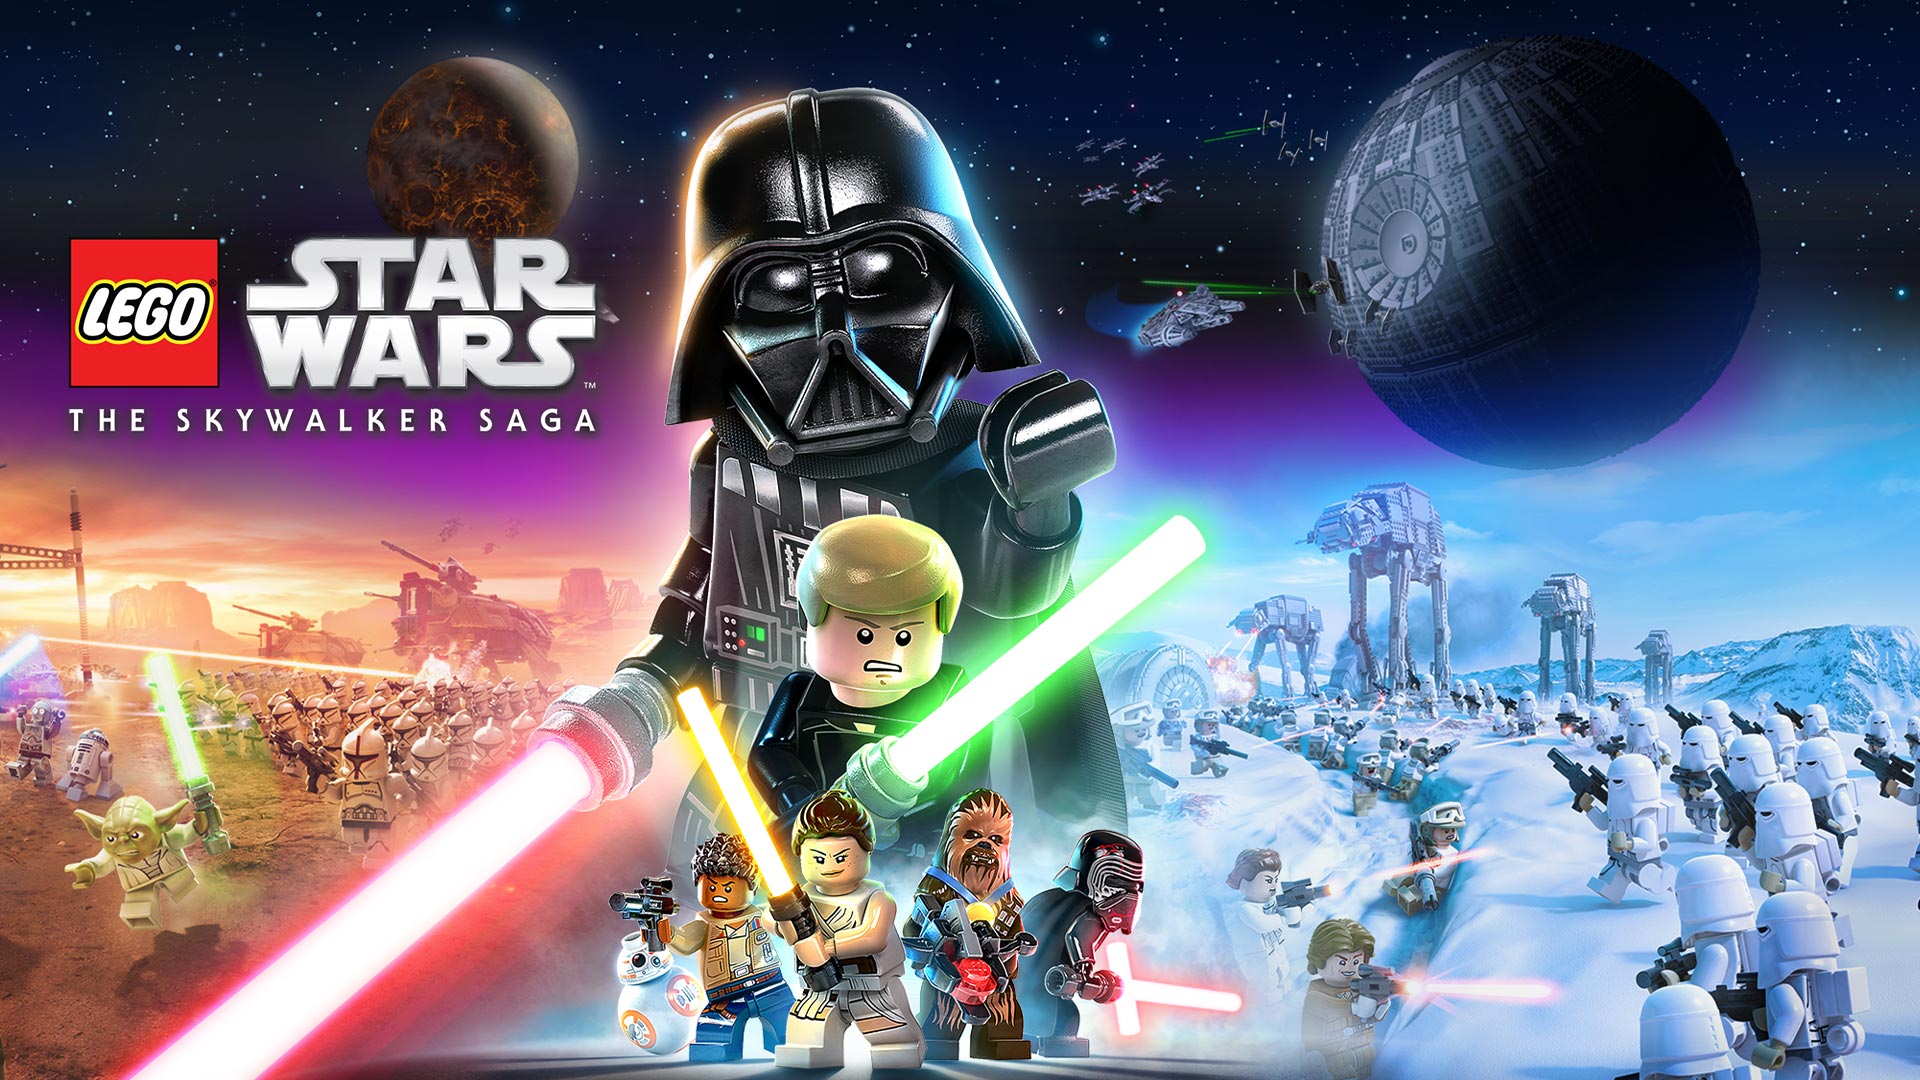 LEGO Star Wars The Skywalker Saga - Misión Primera orden del día